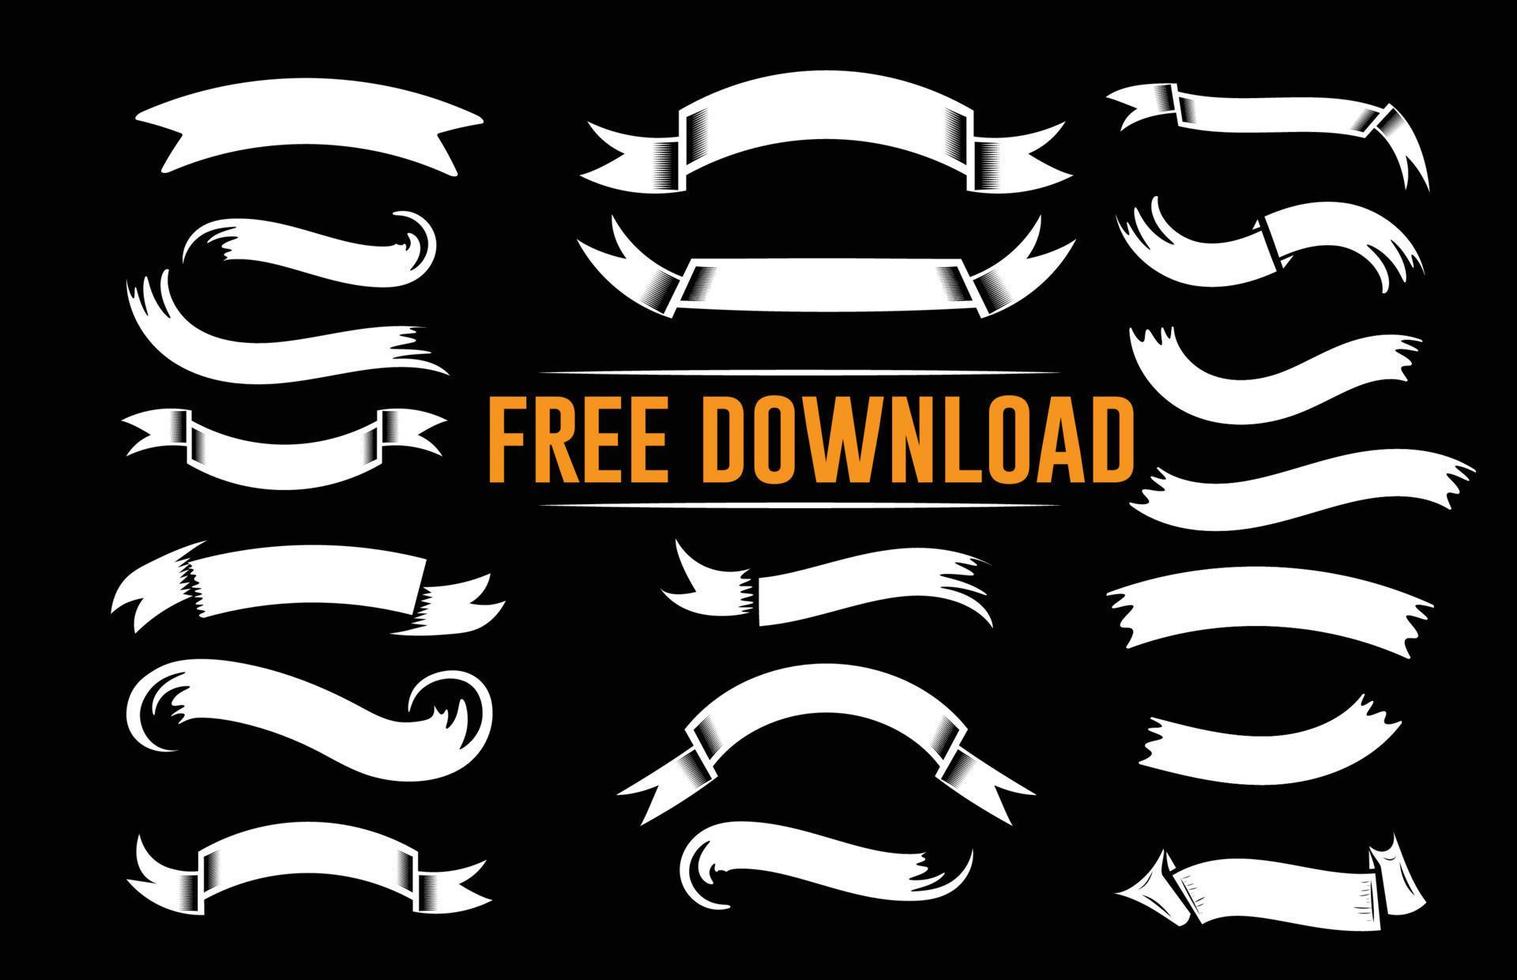 Ribbon free vector download